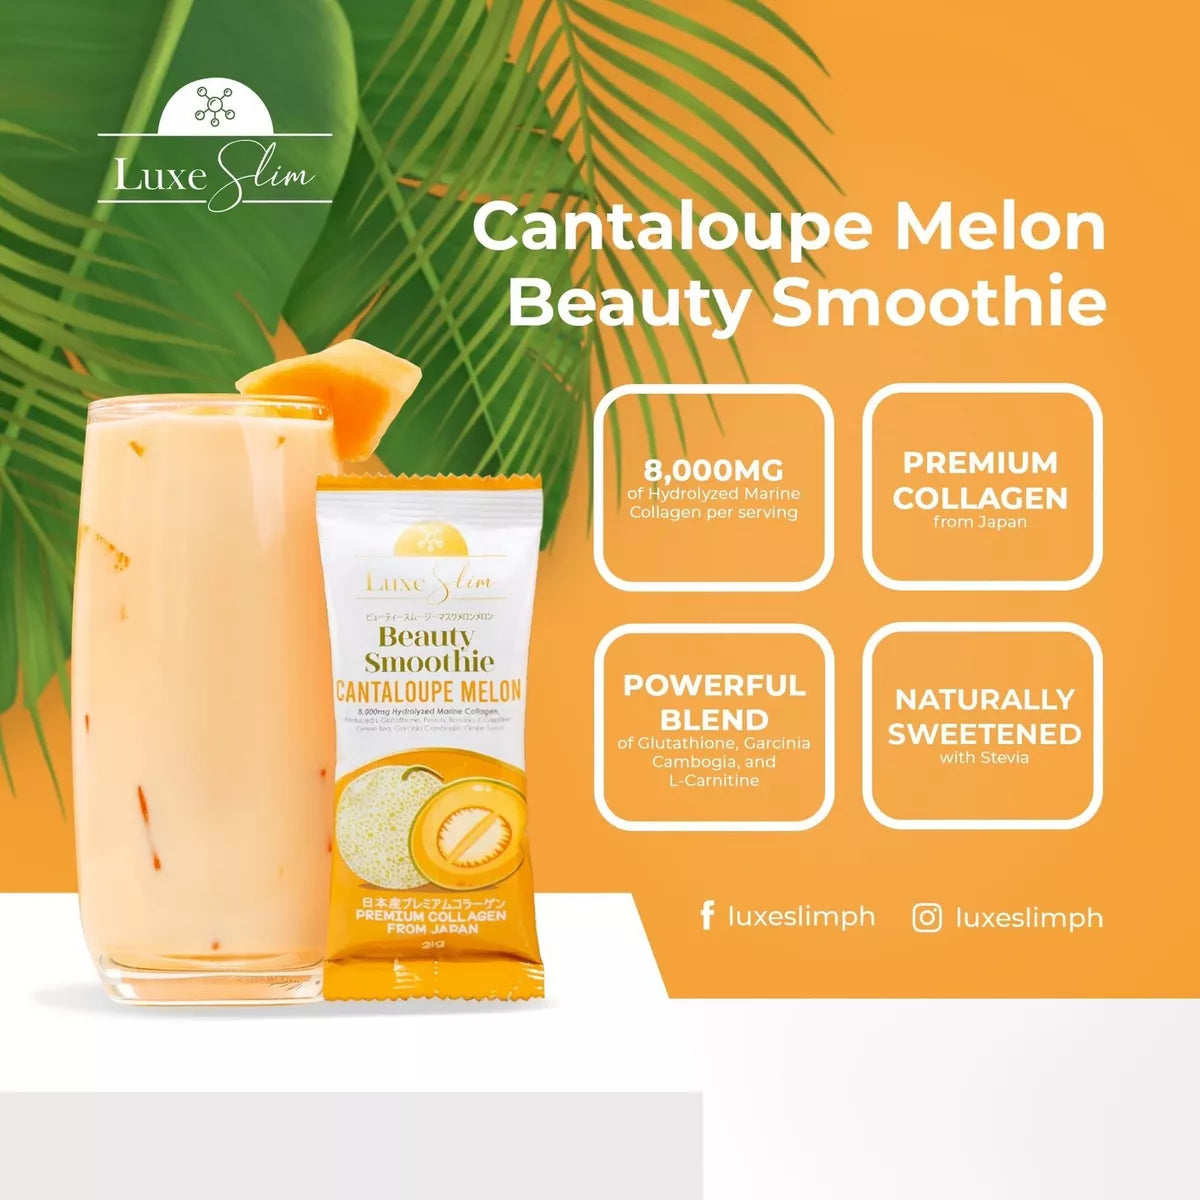 Luxe Slim Cantaloupe Melon (21g x 10 sachets)